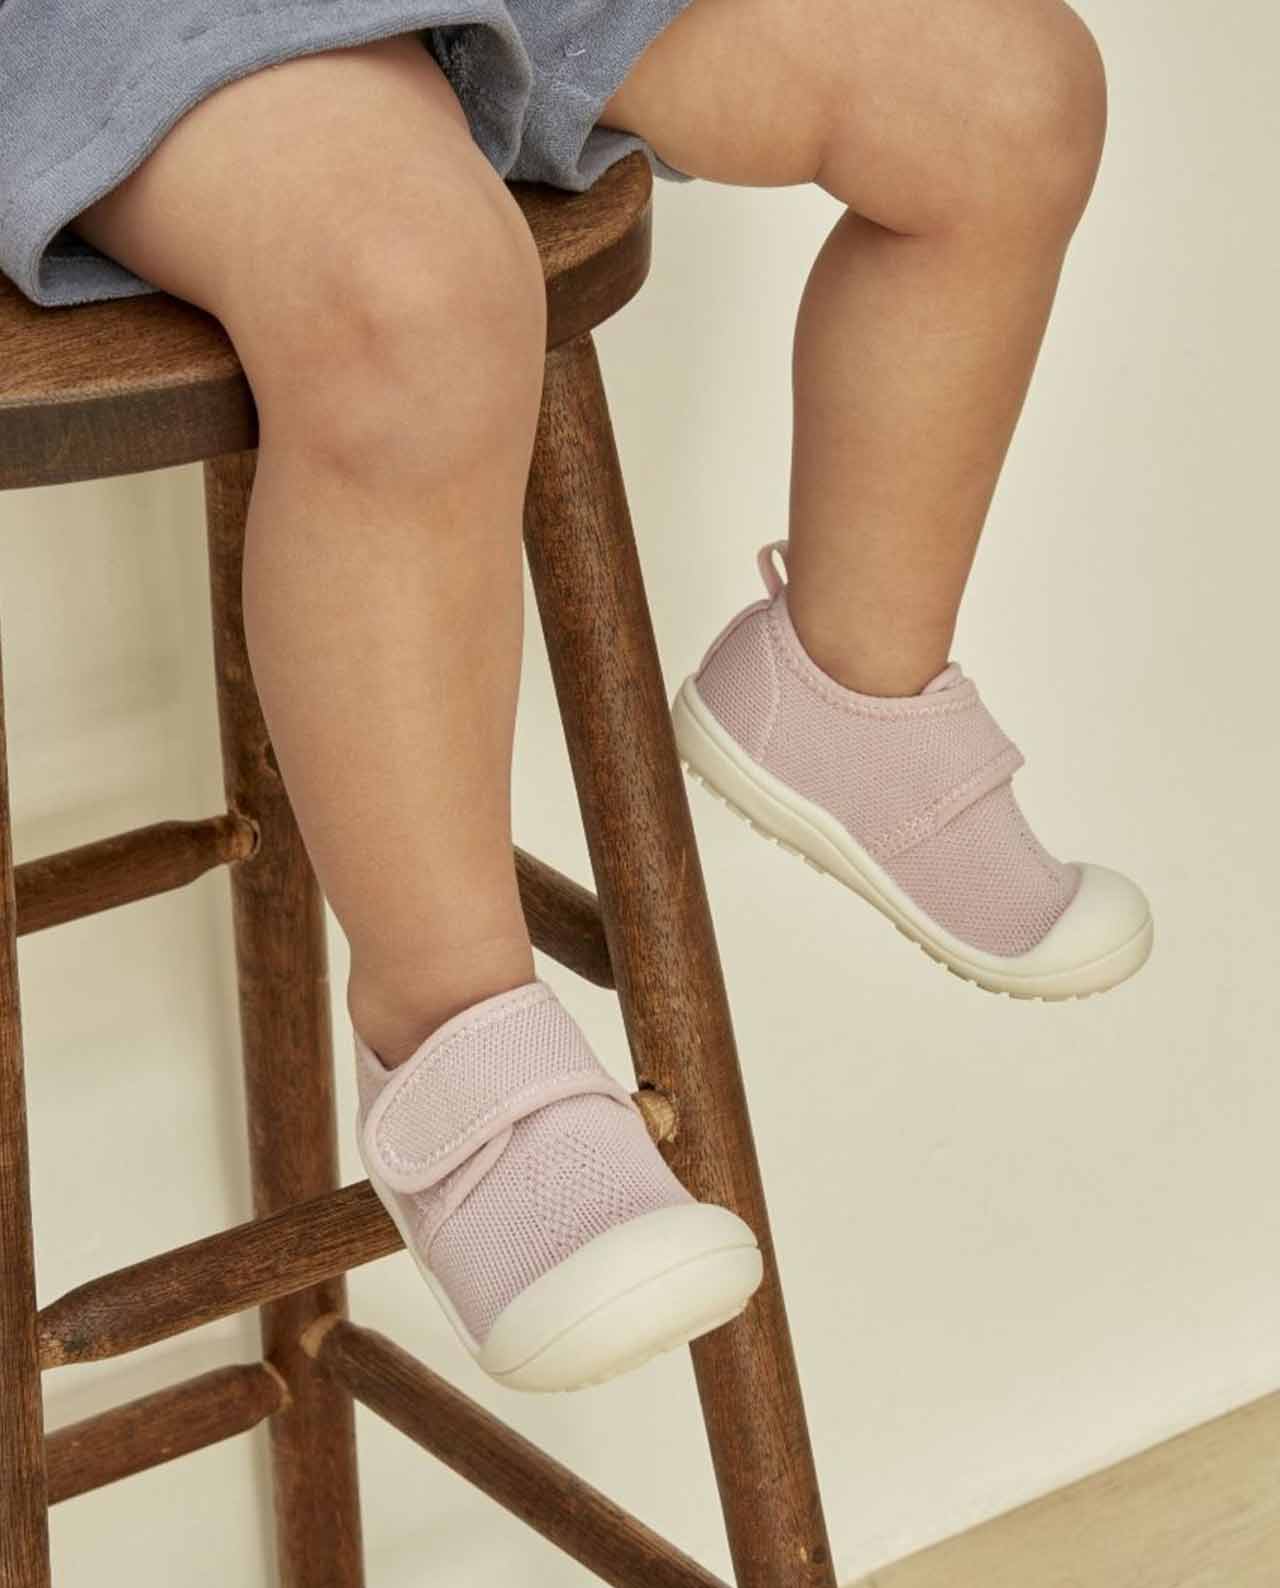 Attipas - Zapato aprendizaje bebé Pom Pom Rosa – Tienda Grumetes Moda  Infantil